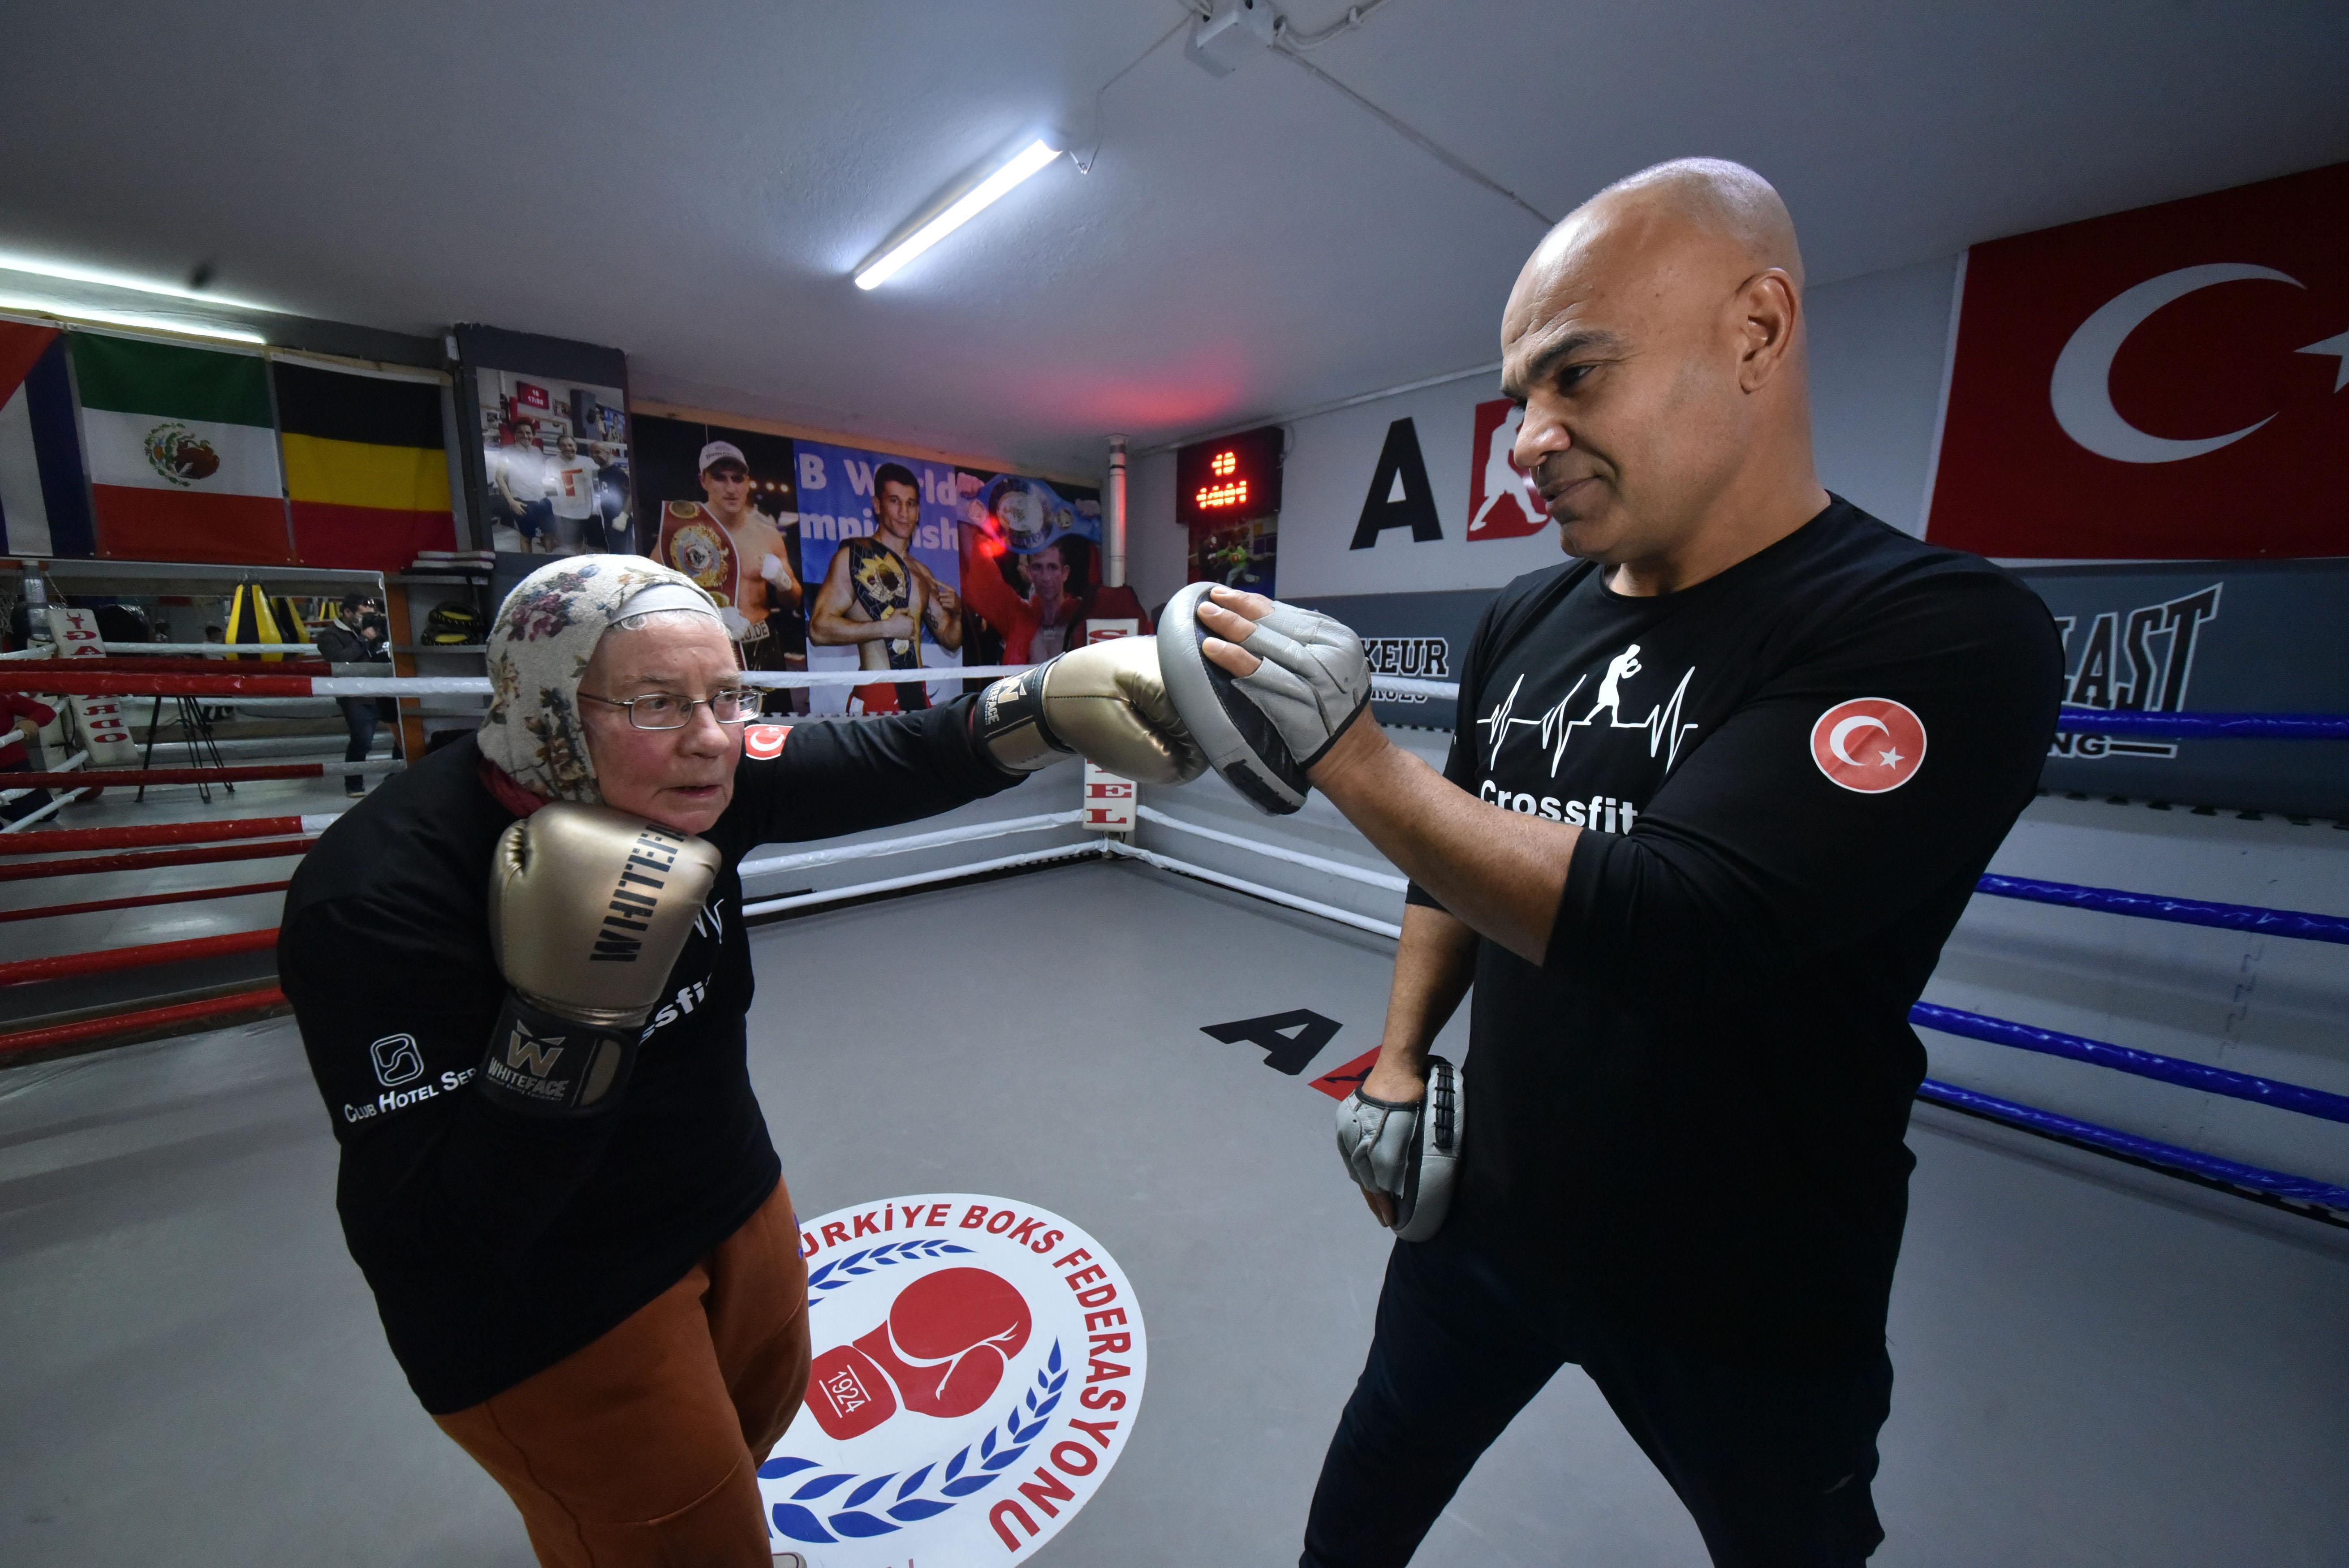 75 yaşındaki Naciye Nine, boks yaparak hastalığıyla mücadele ediyor